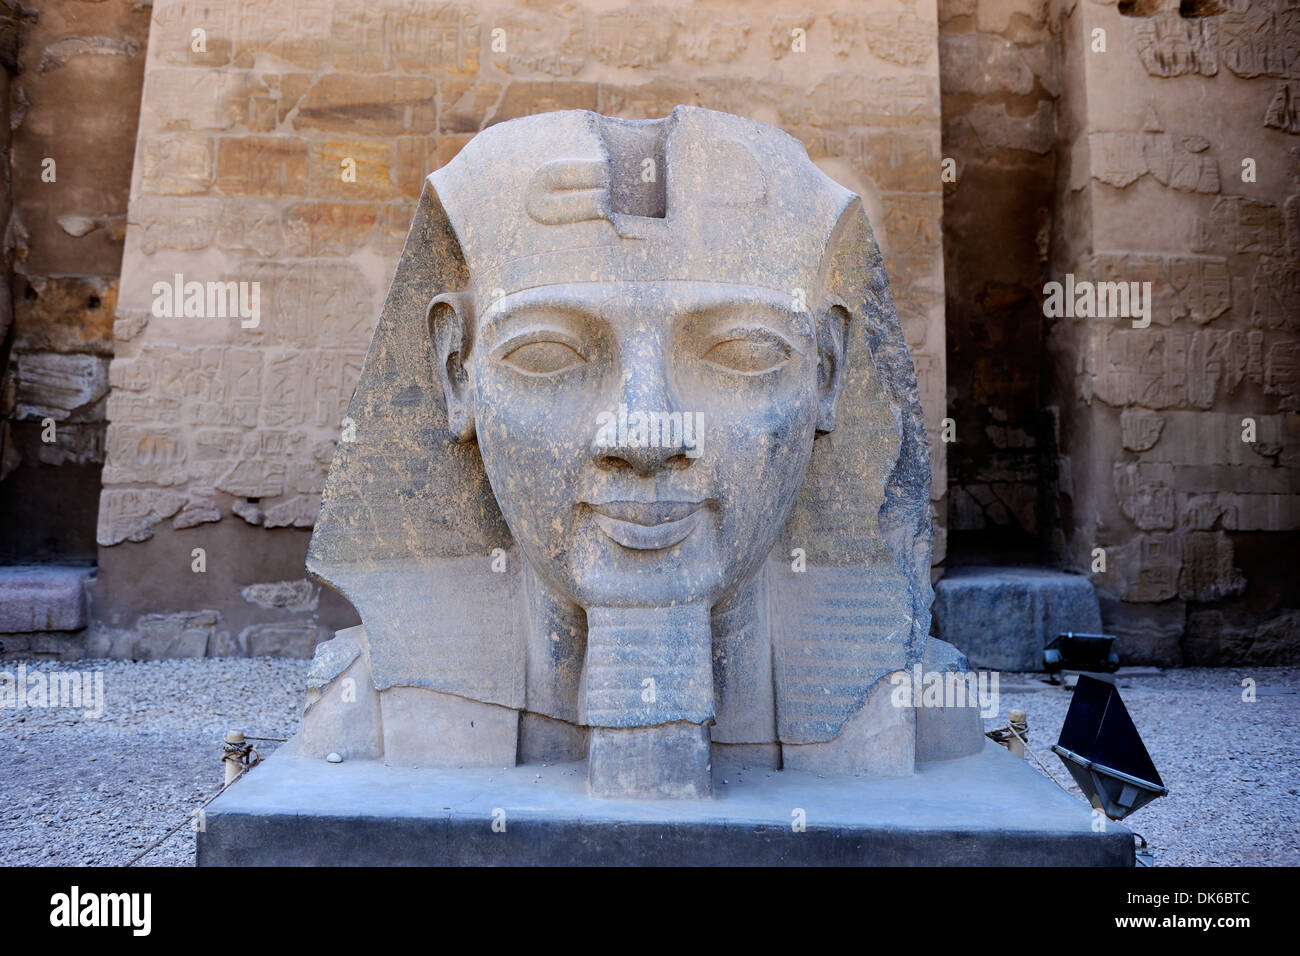 Cabeza colosal de Ramsés II en la entrada al Templo de Luxor - Luxor, Egipto Foto de stock